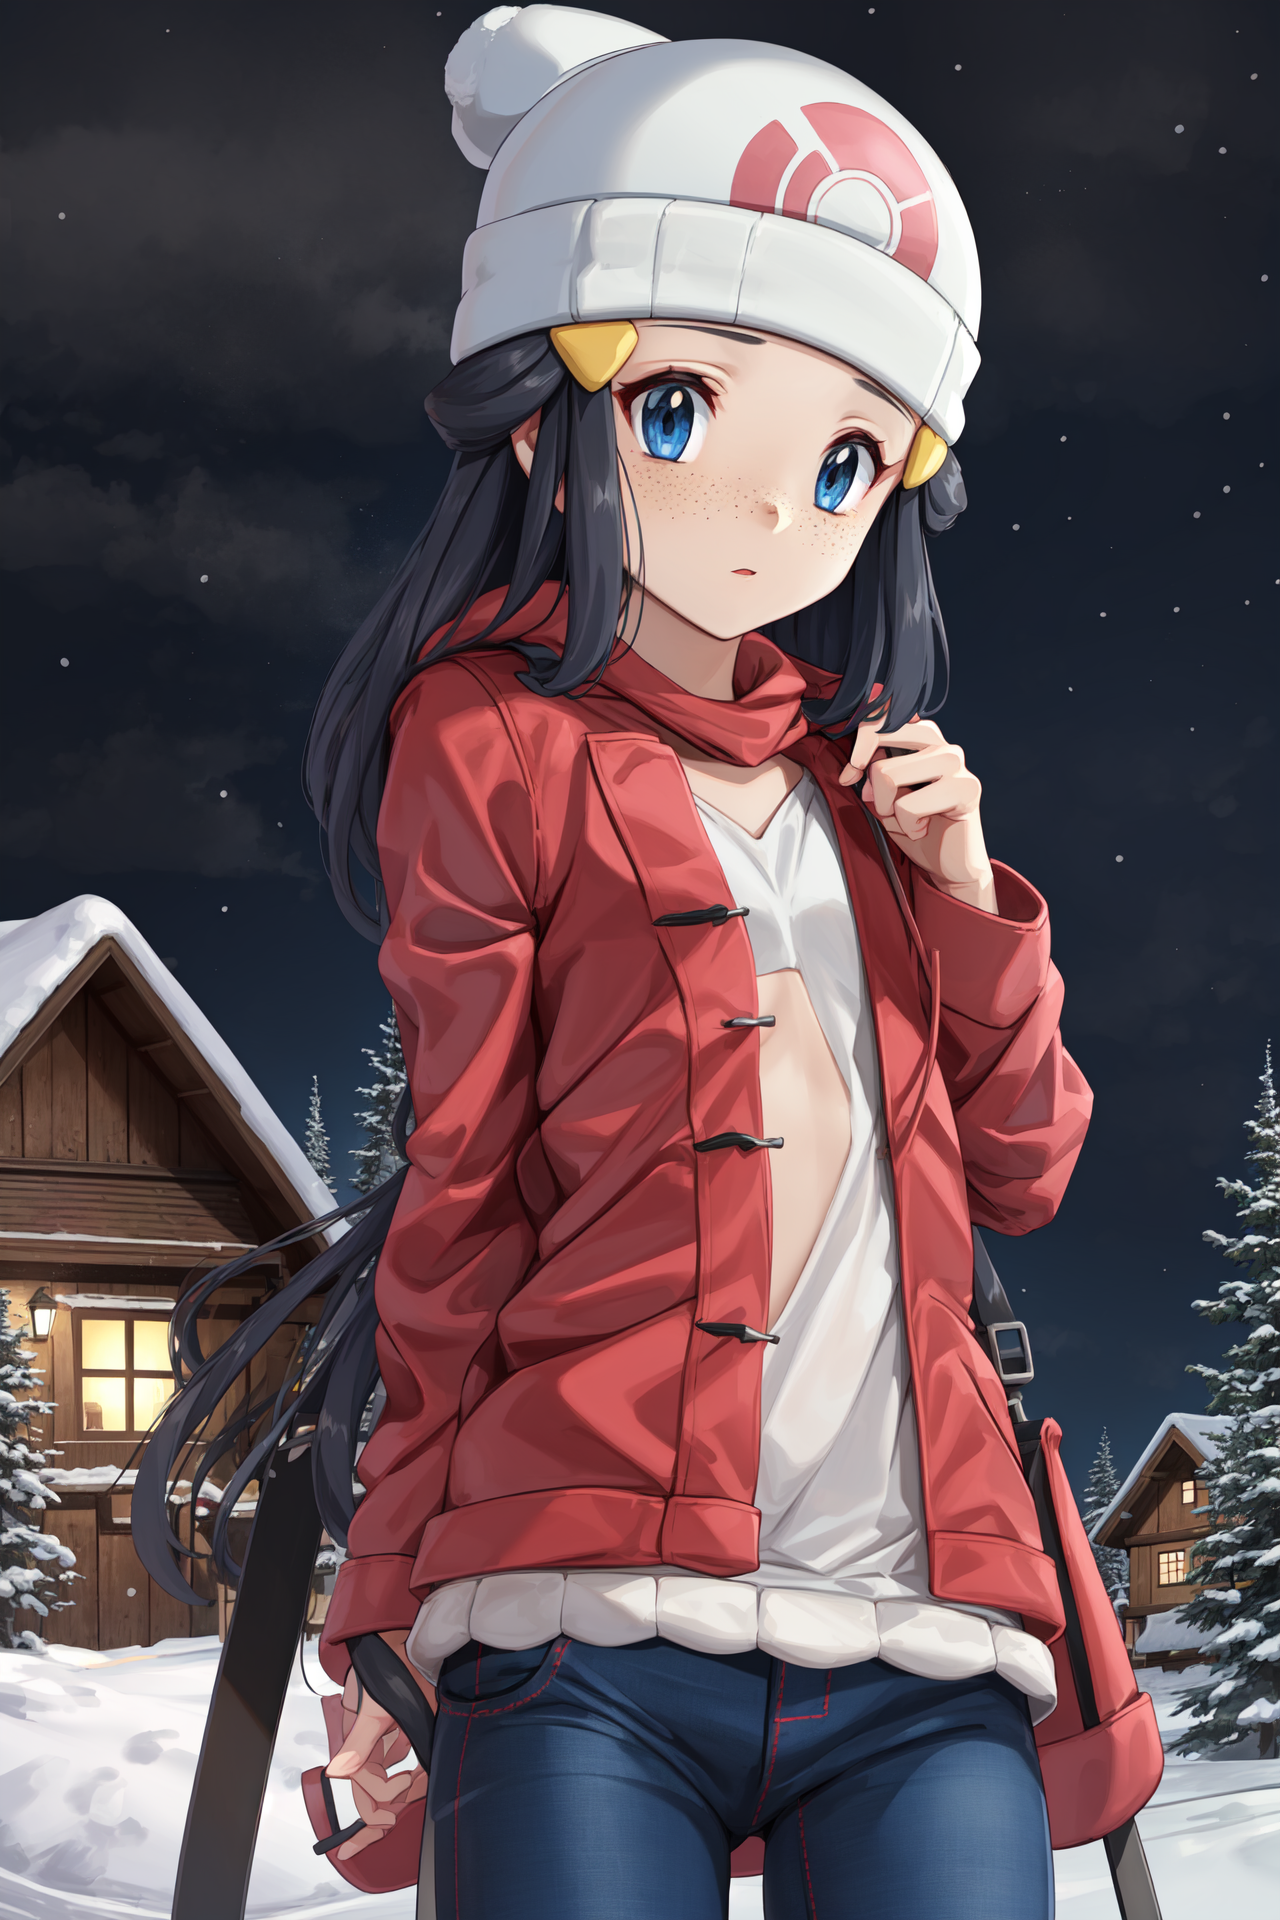 Sakurakaibacosplay - Winter version of Dawn/Hikari from Pokemon